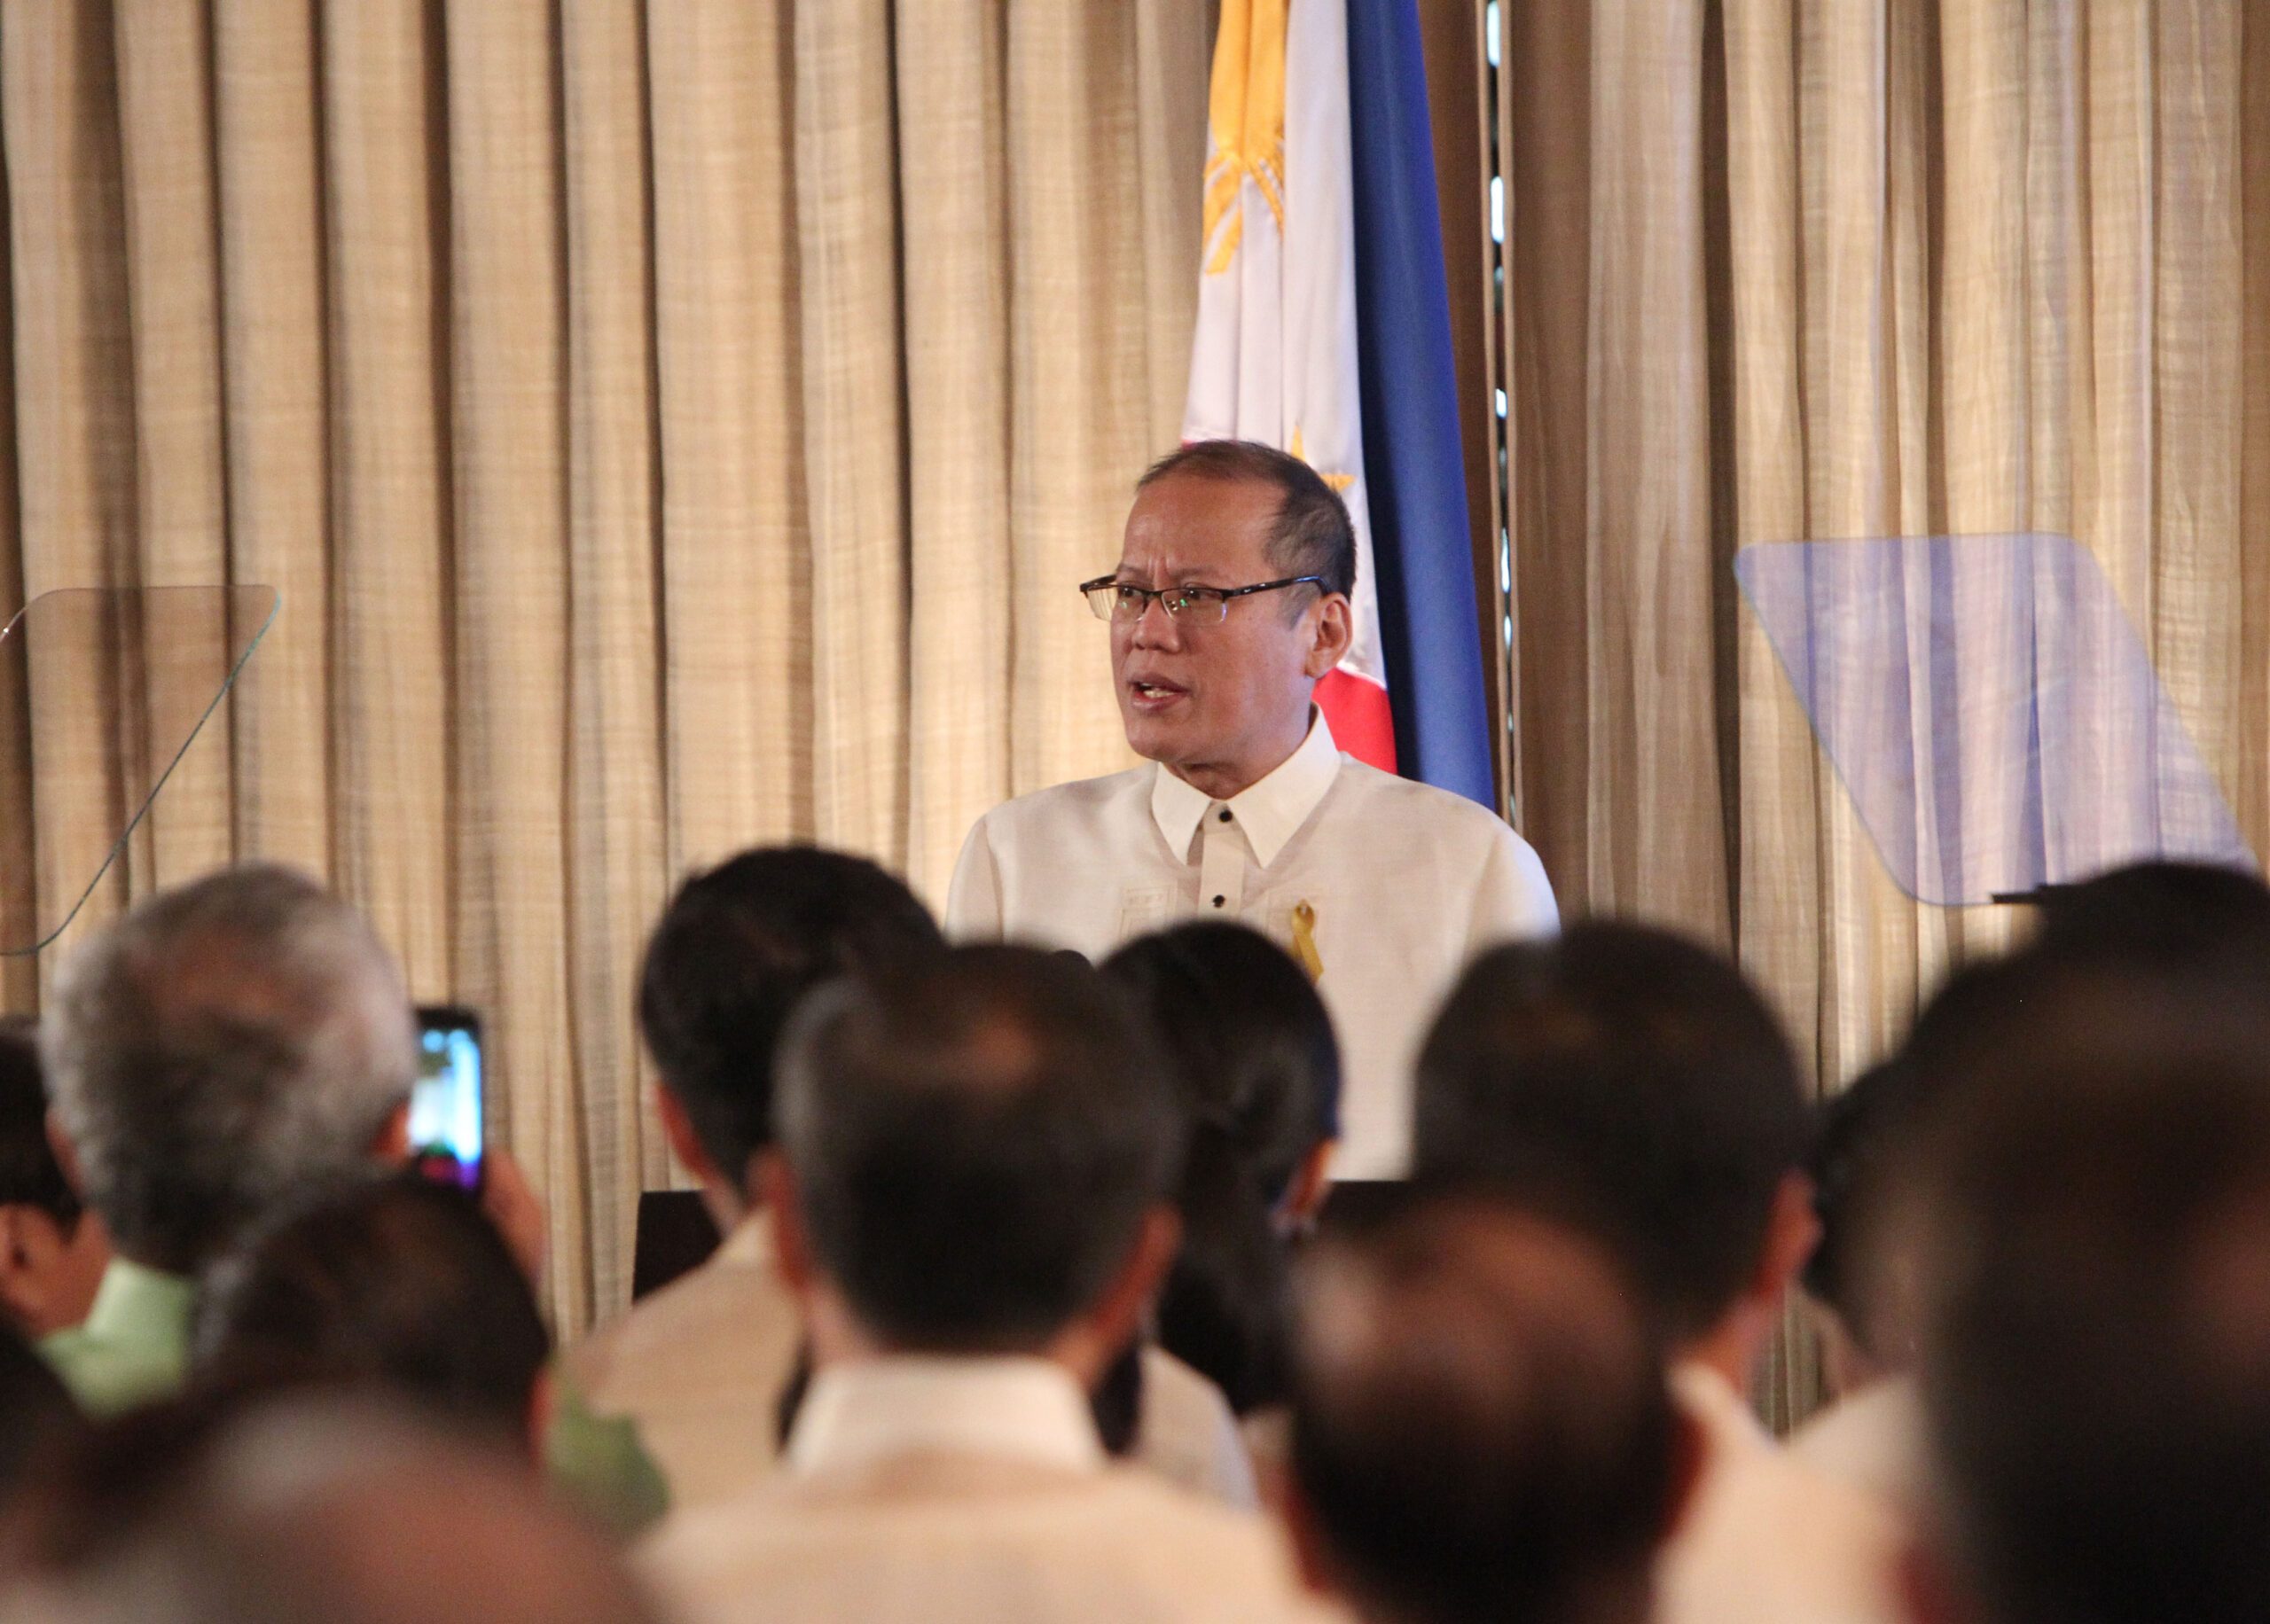 Graft or homicide? SC stops Aquino’s Mamasapano case at Sandiganbayan